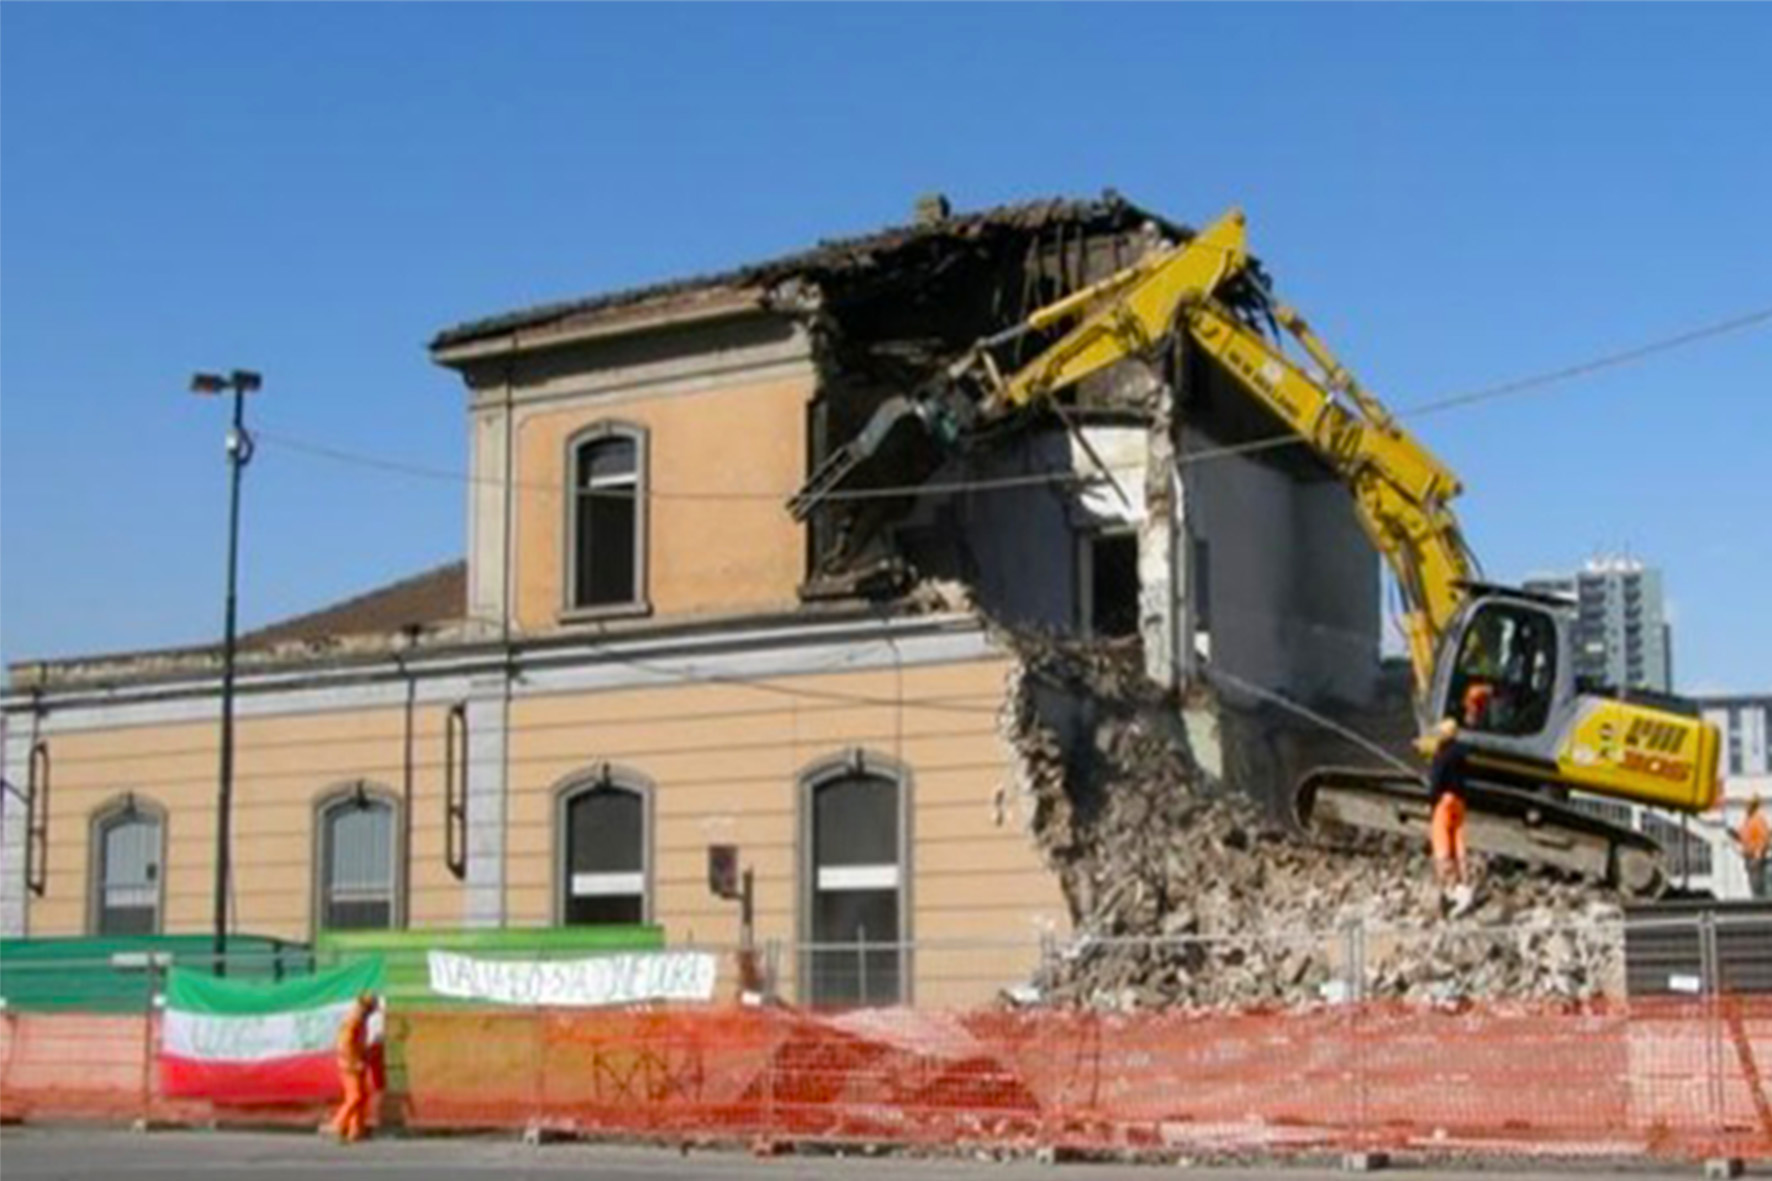 La vecchia stazione ferroviaria Torino Dora, costruita in piazza Baldissera nel 1858, in fase di demolizione, il 18 marzo 2011, foto © V.Bertola